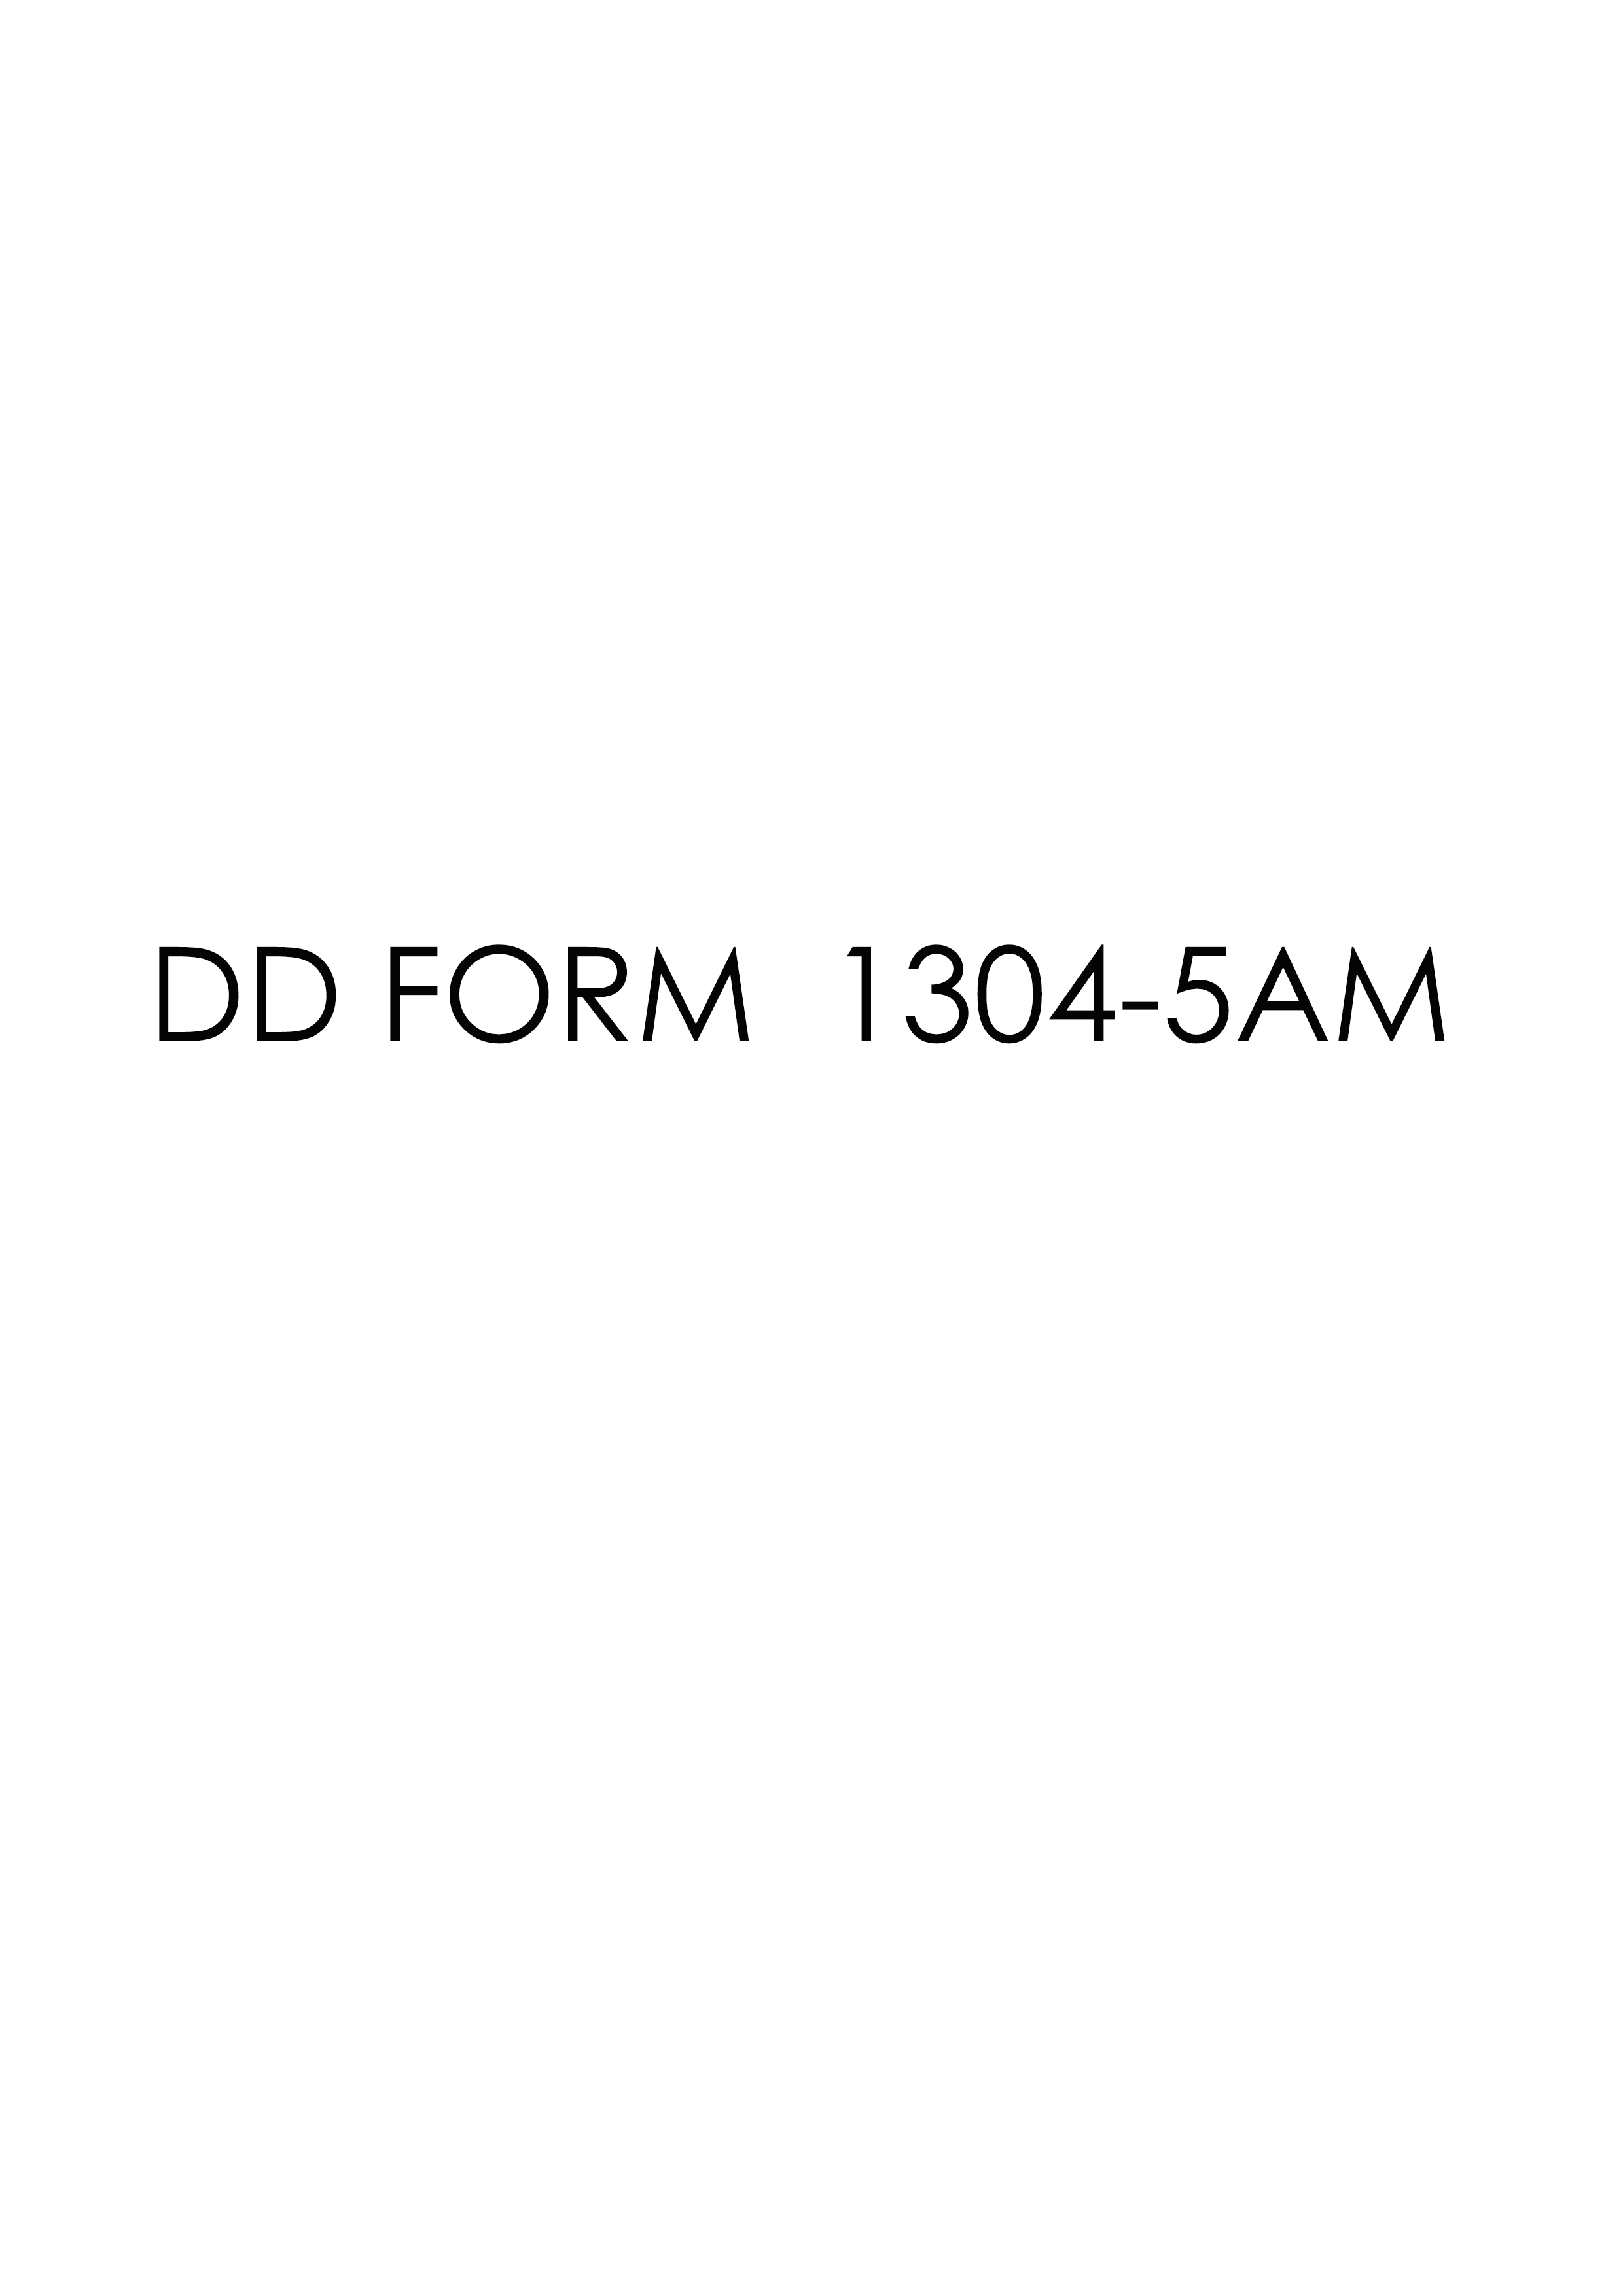 Download dd 1304-5AM Form